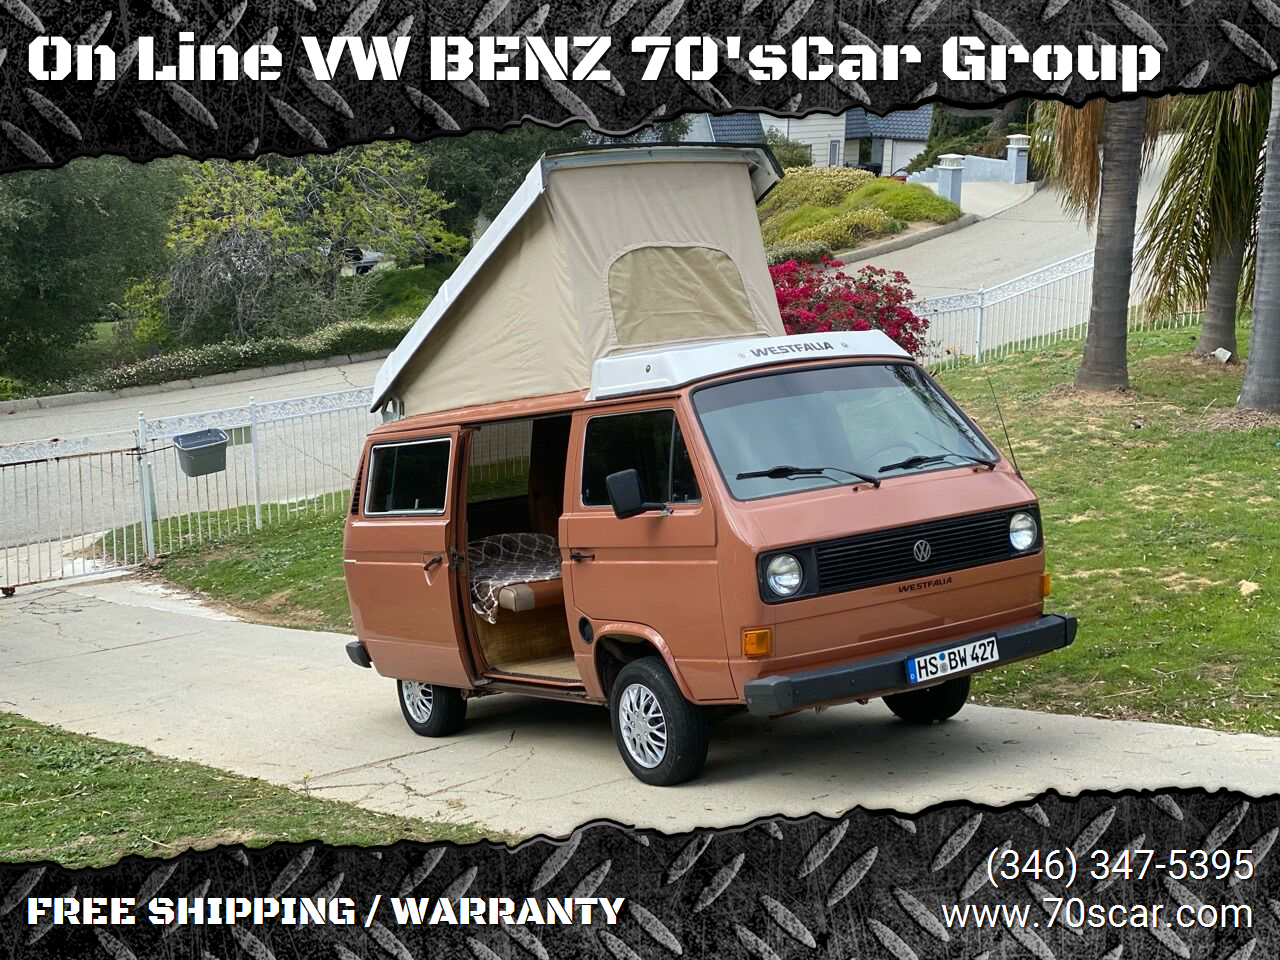 used camper van for sale